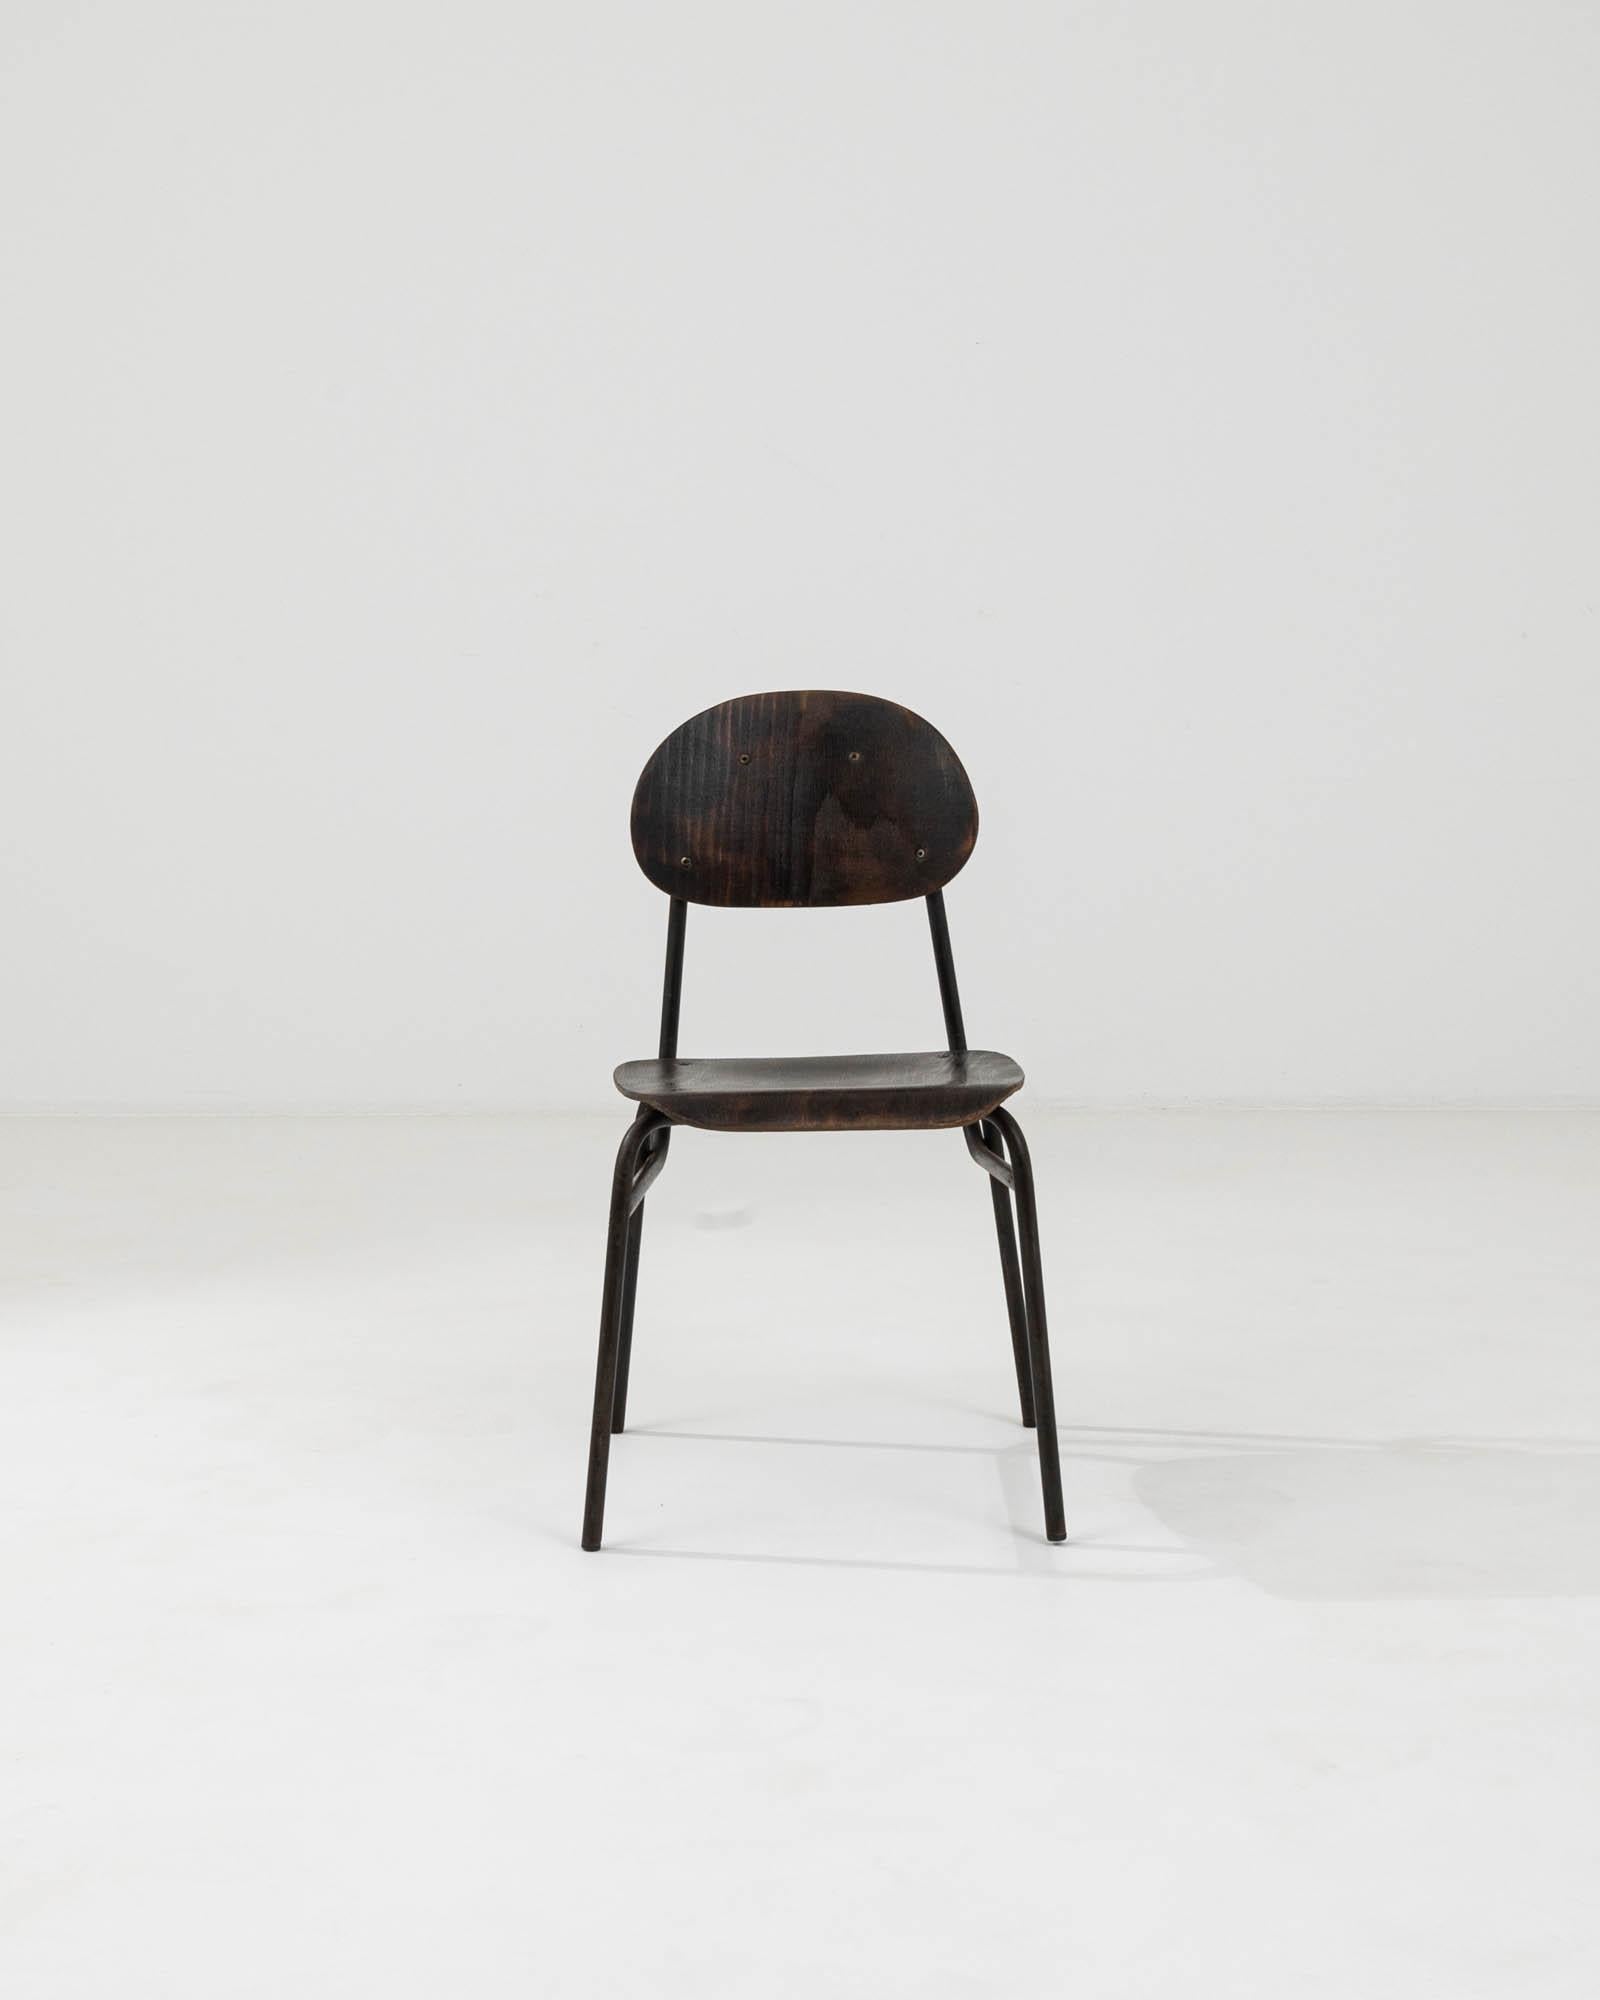 Entrez dans un monde où le design classique rencontre une fonction durable avec cette chaise en métal et bois d'Europe centrale du XXe siècle. Cette pièce singulière illustre l'art de l'artisanat intemporel, avec une structure métallique élégante